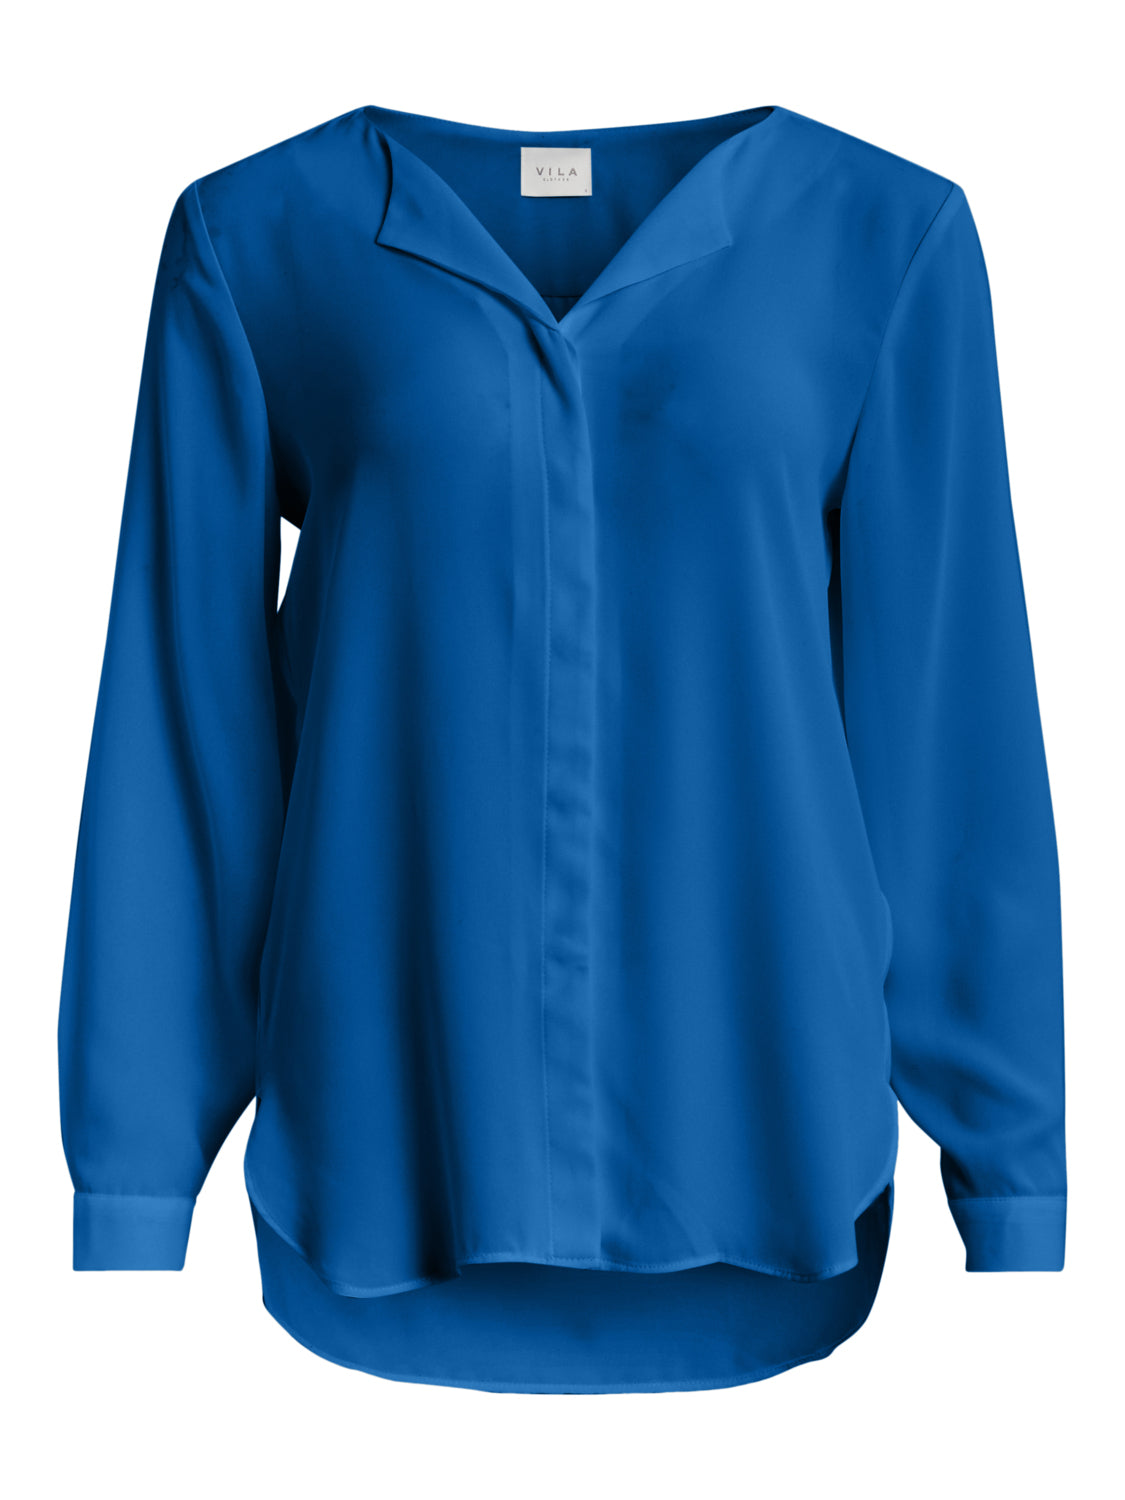 VILUCY Shirts - Lapis Blue